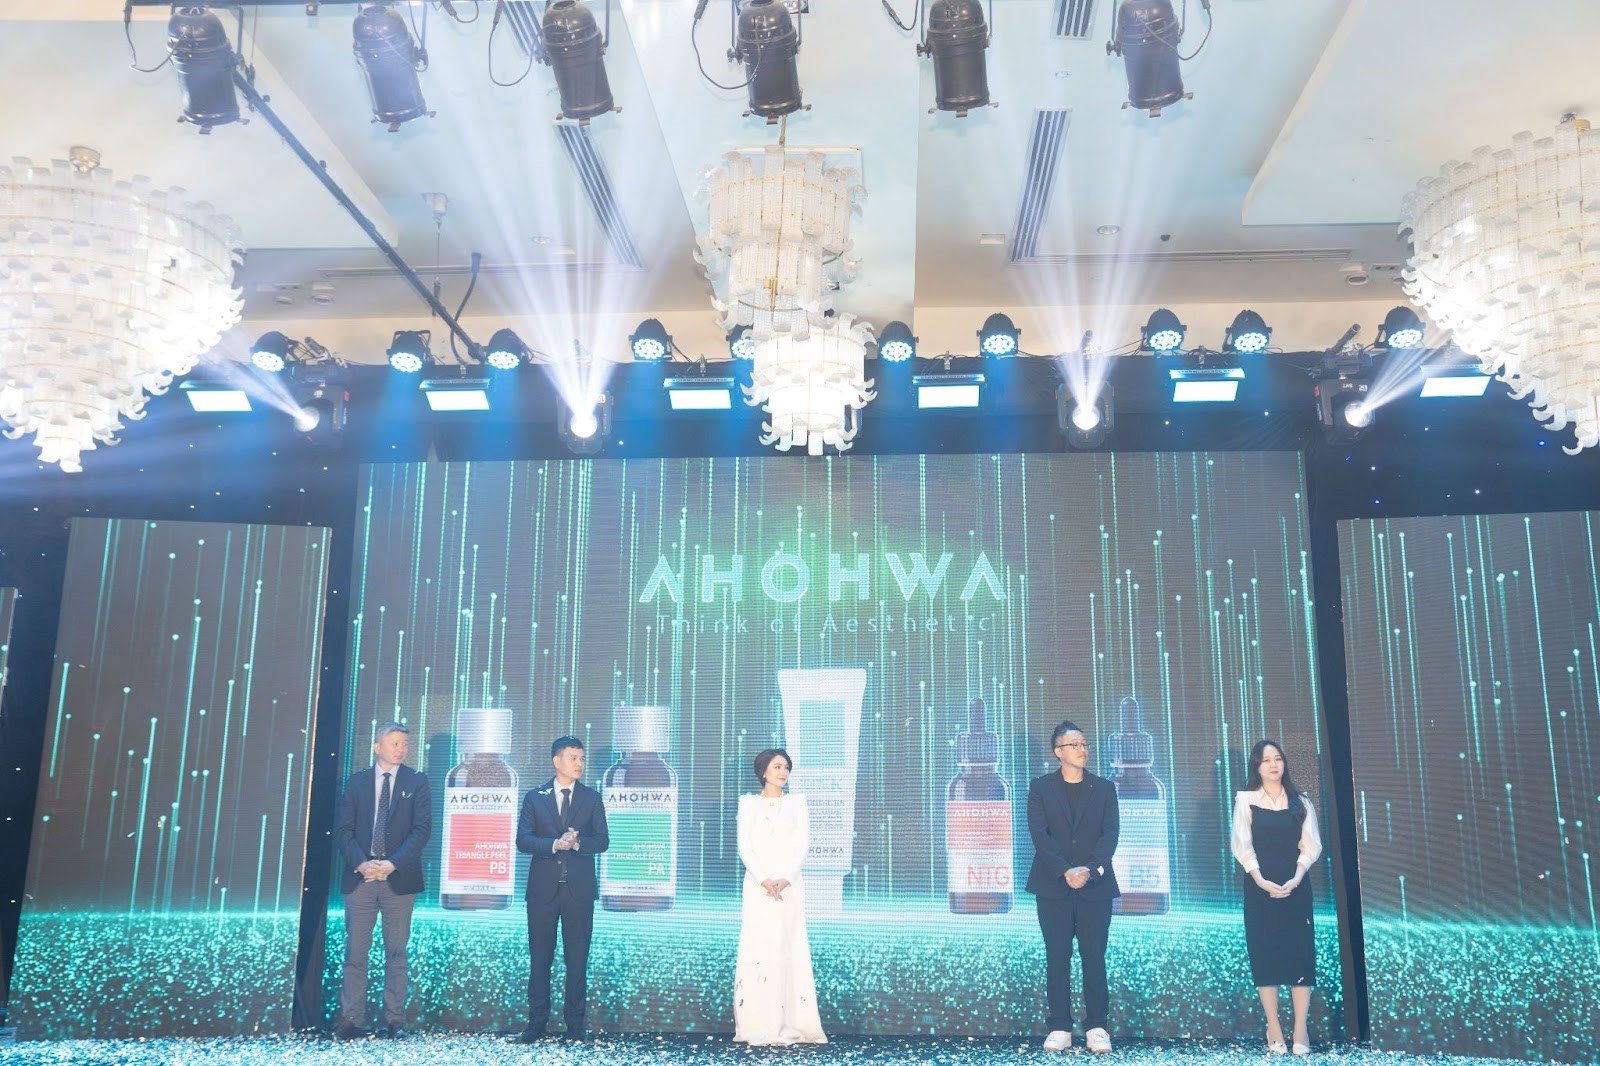 Năm sản phẩm nổi bật của Ahohwa được công bố trong buổi lễ.